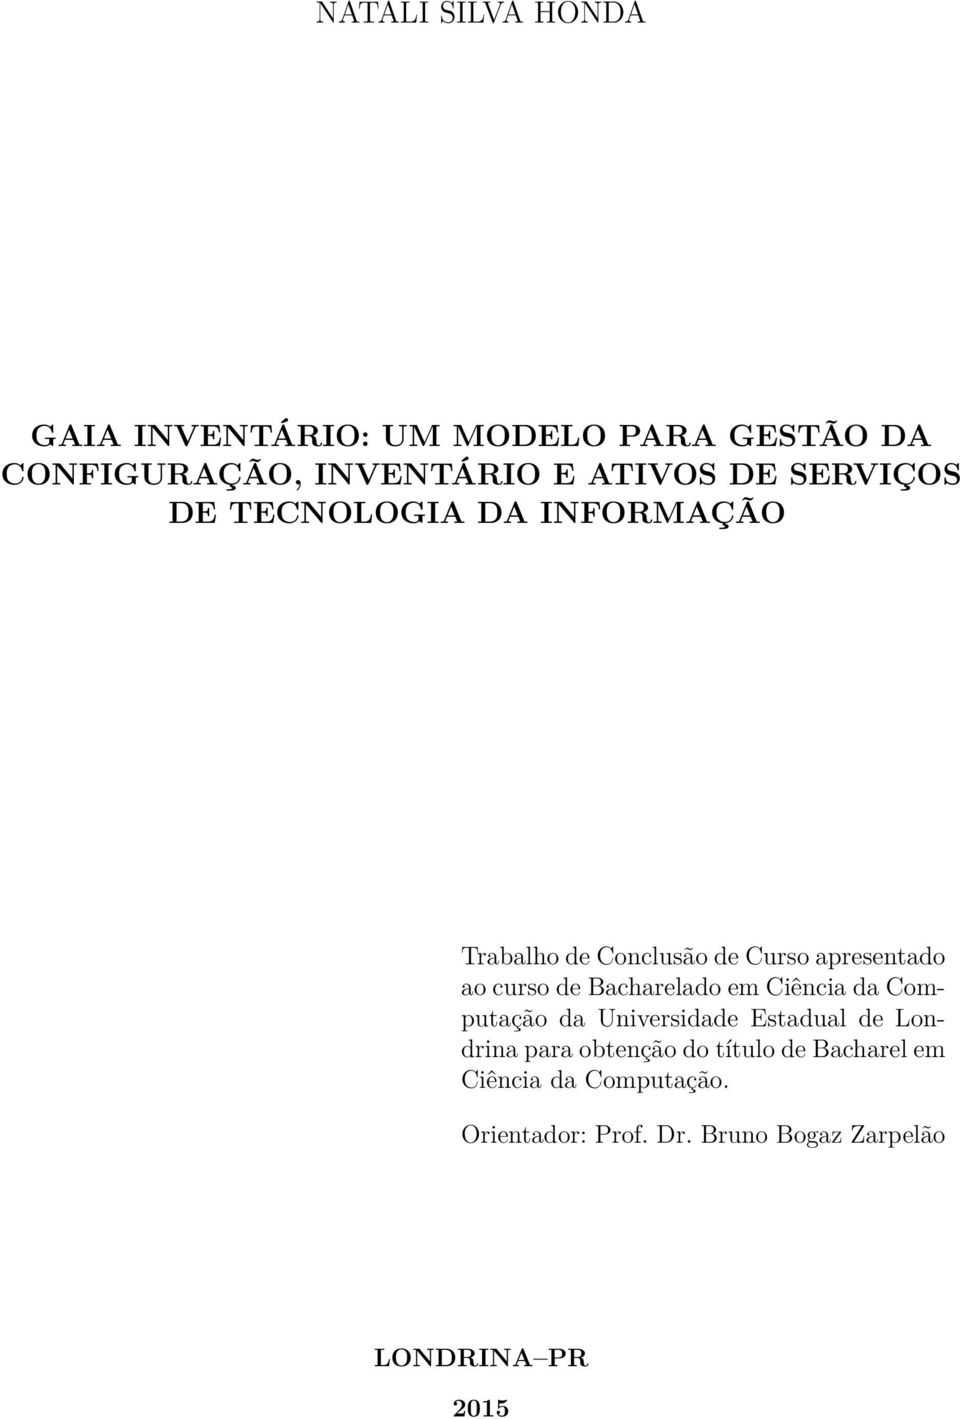 Bacharelado em Ciência da Computação da Universidade Estadual de Londrina para obtenção do